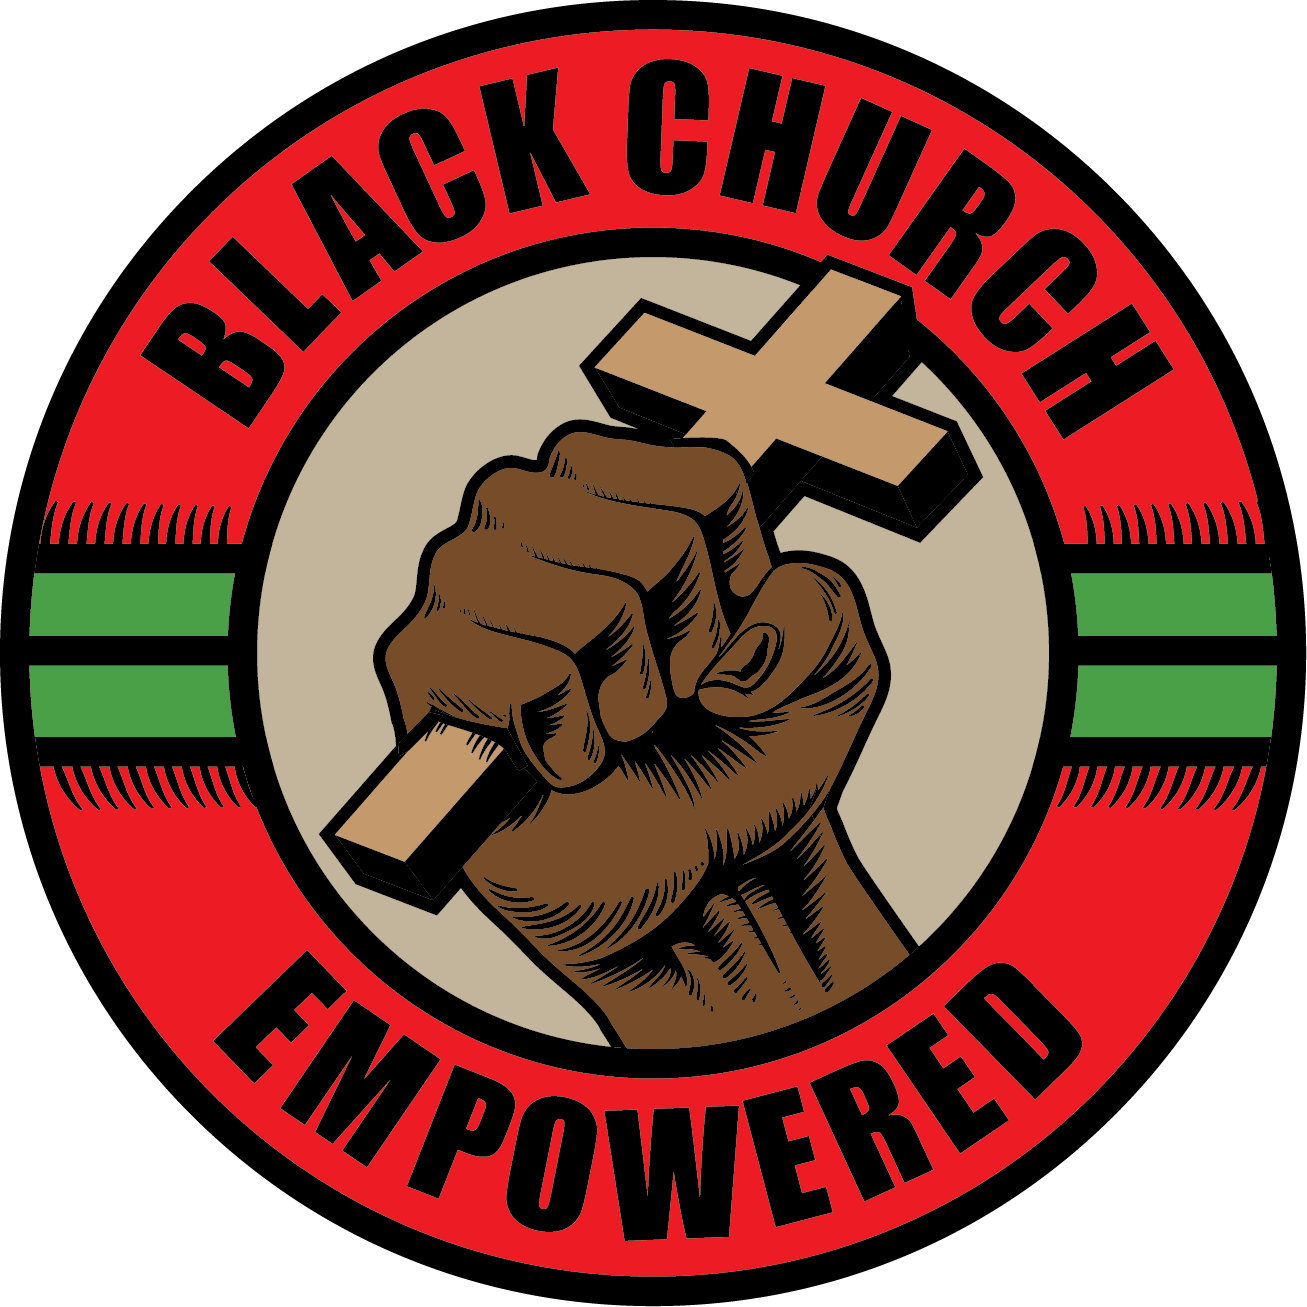 Black Church Empowered